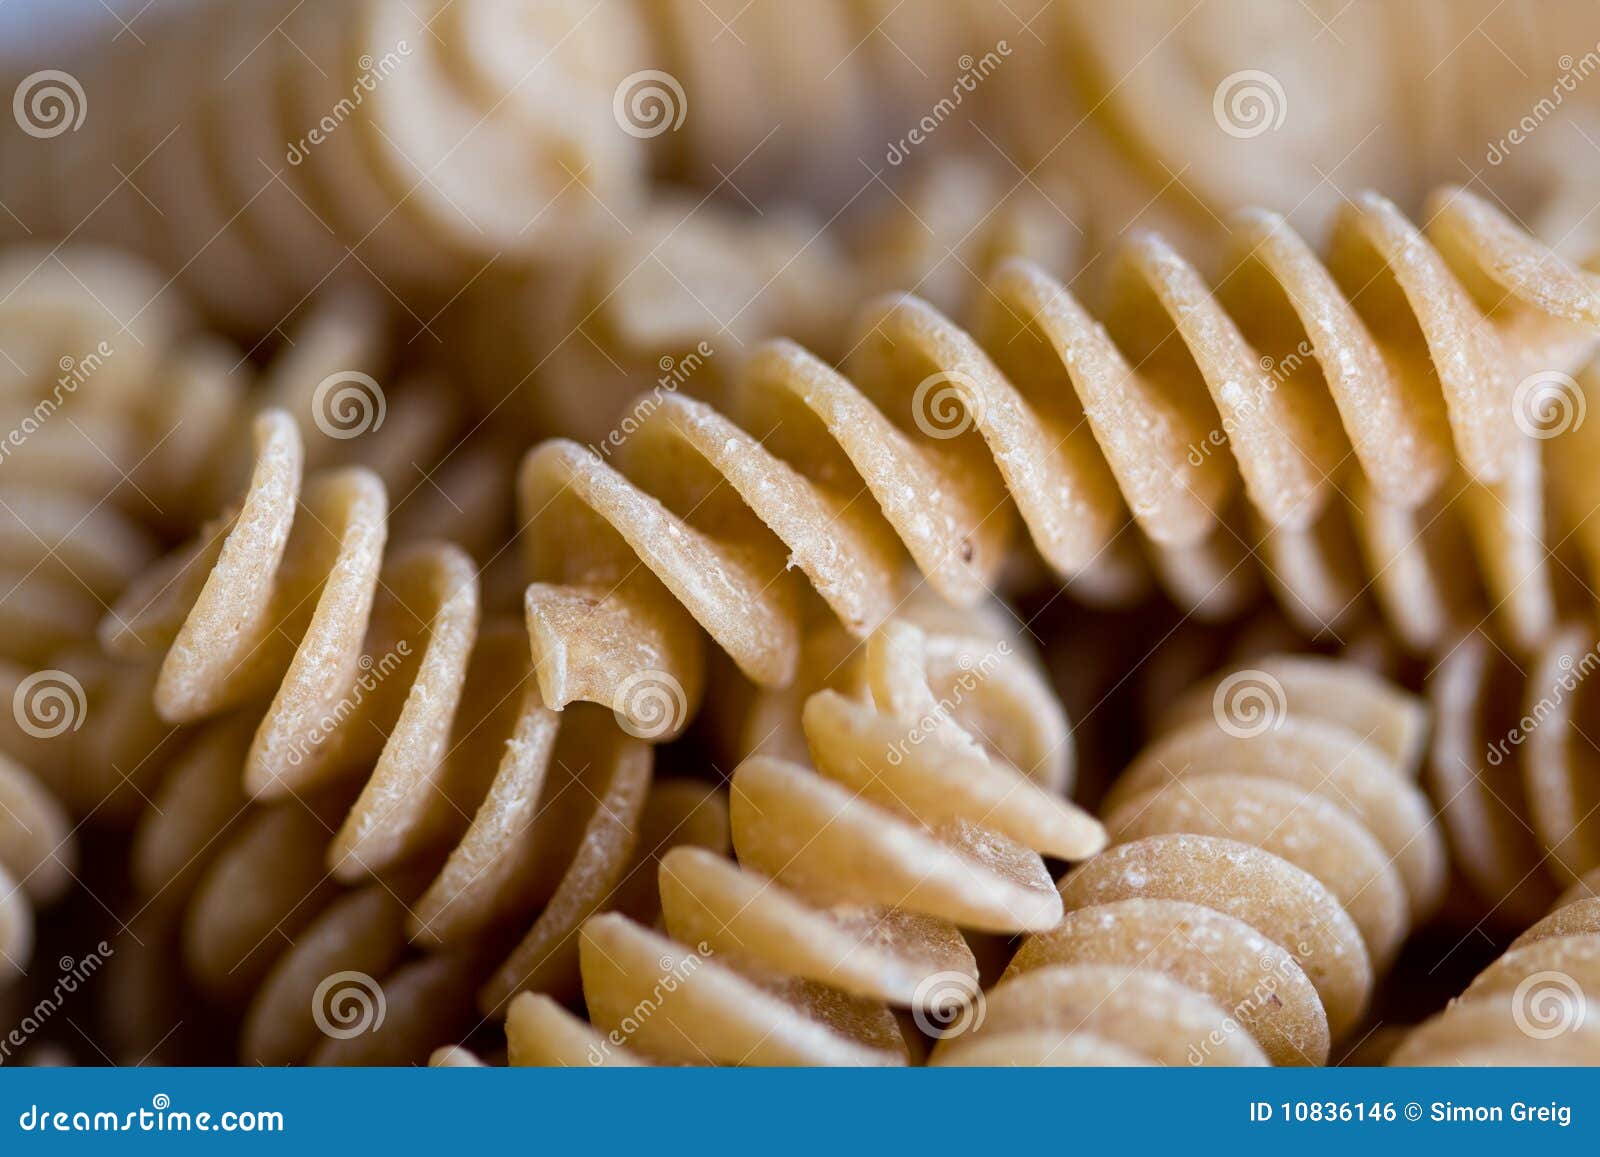 wholewheat pasta twirls macro